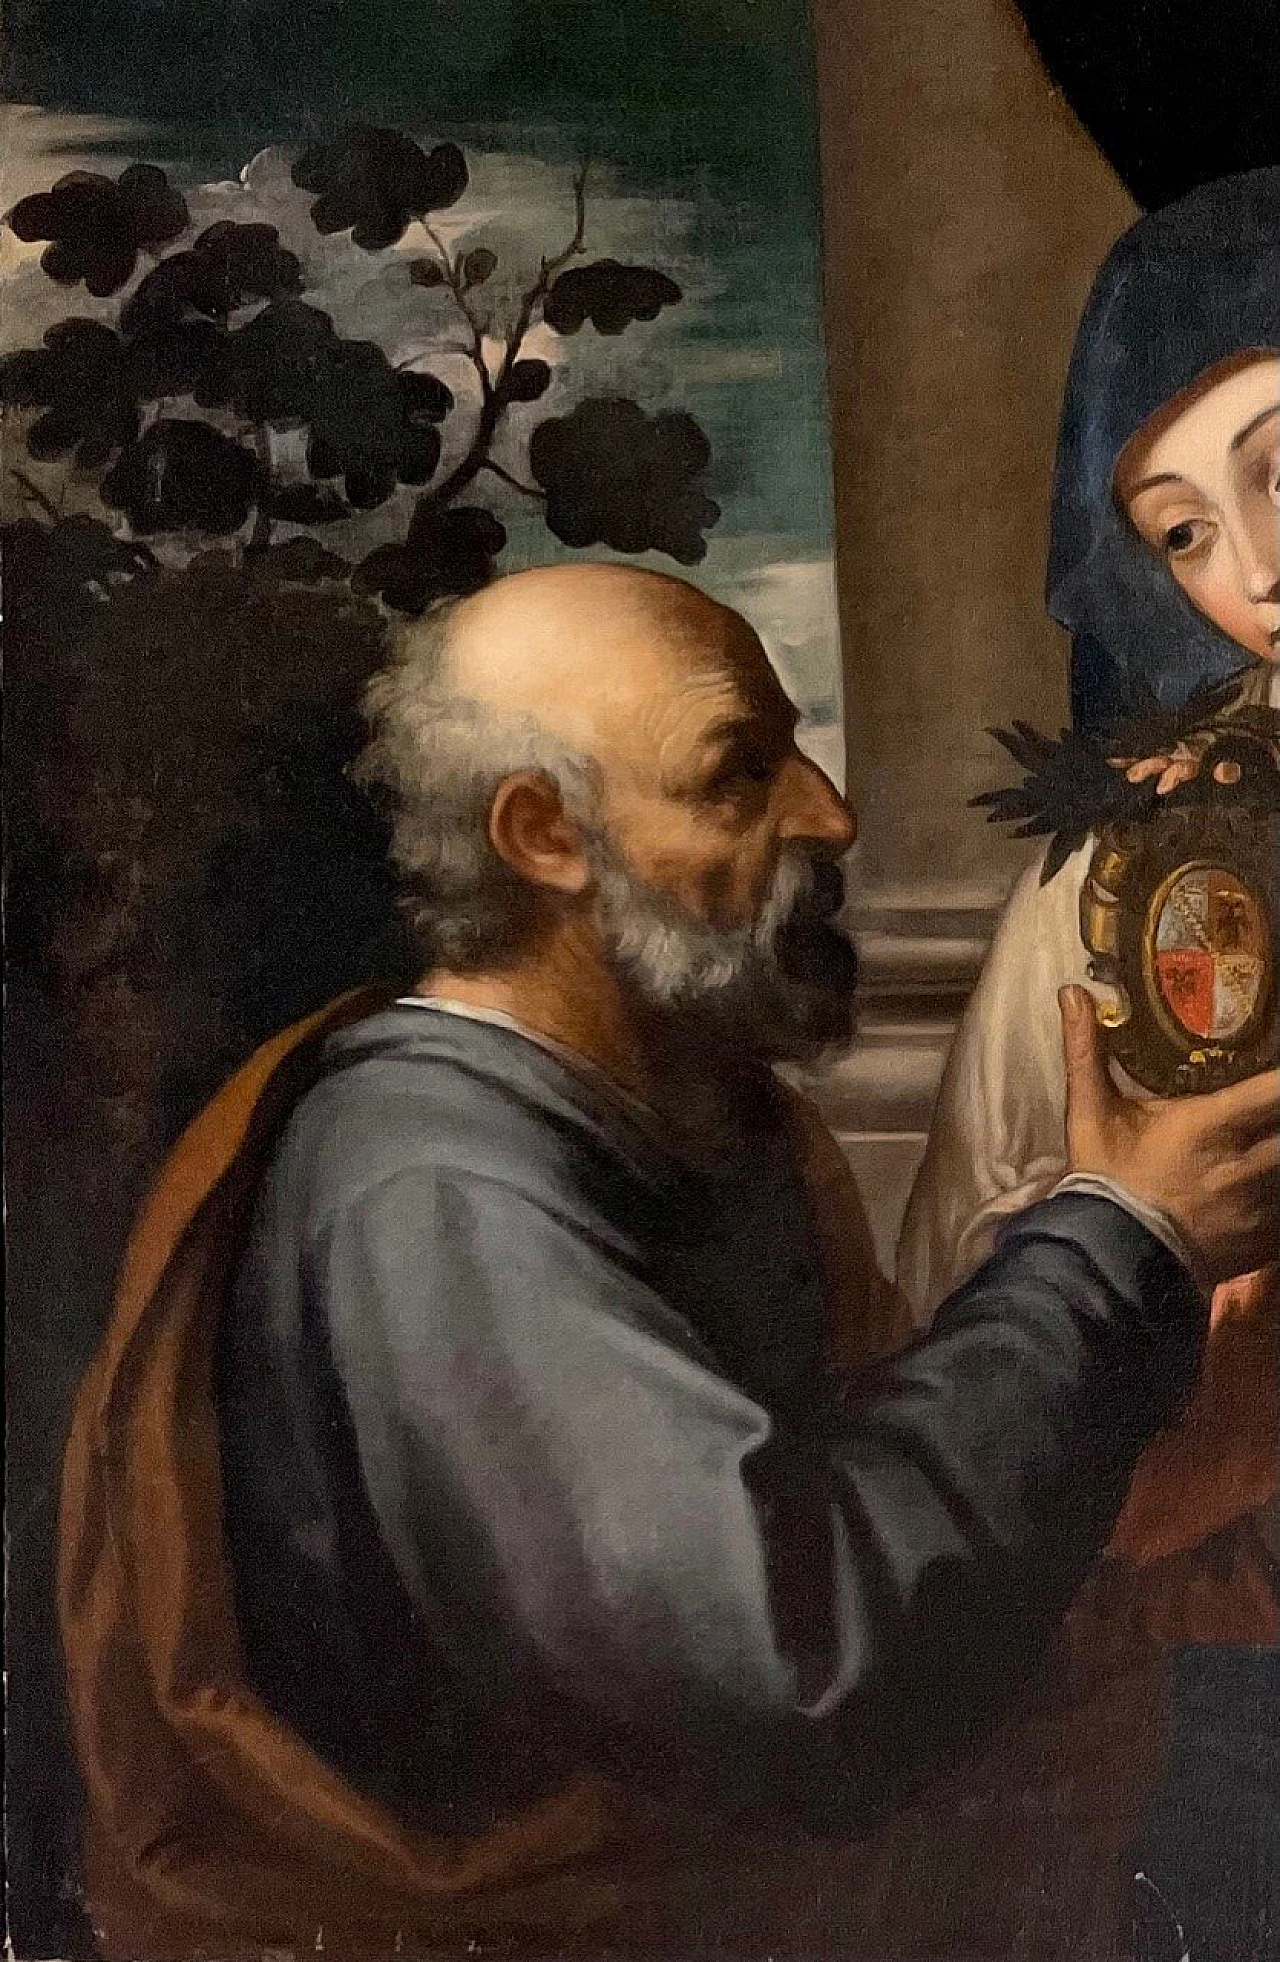 Dipinto Sacra Famiglia con stemma nobiliare alla maniera di Tiziano Vecellio, '500 1473316